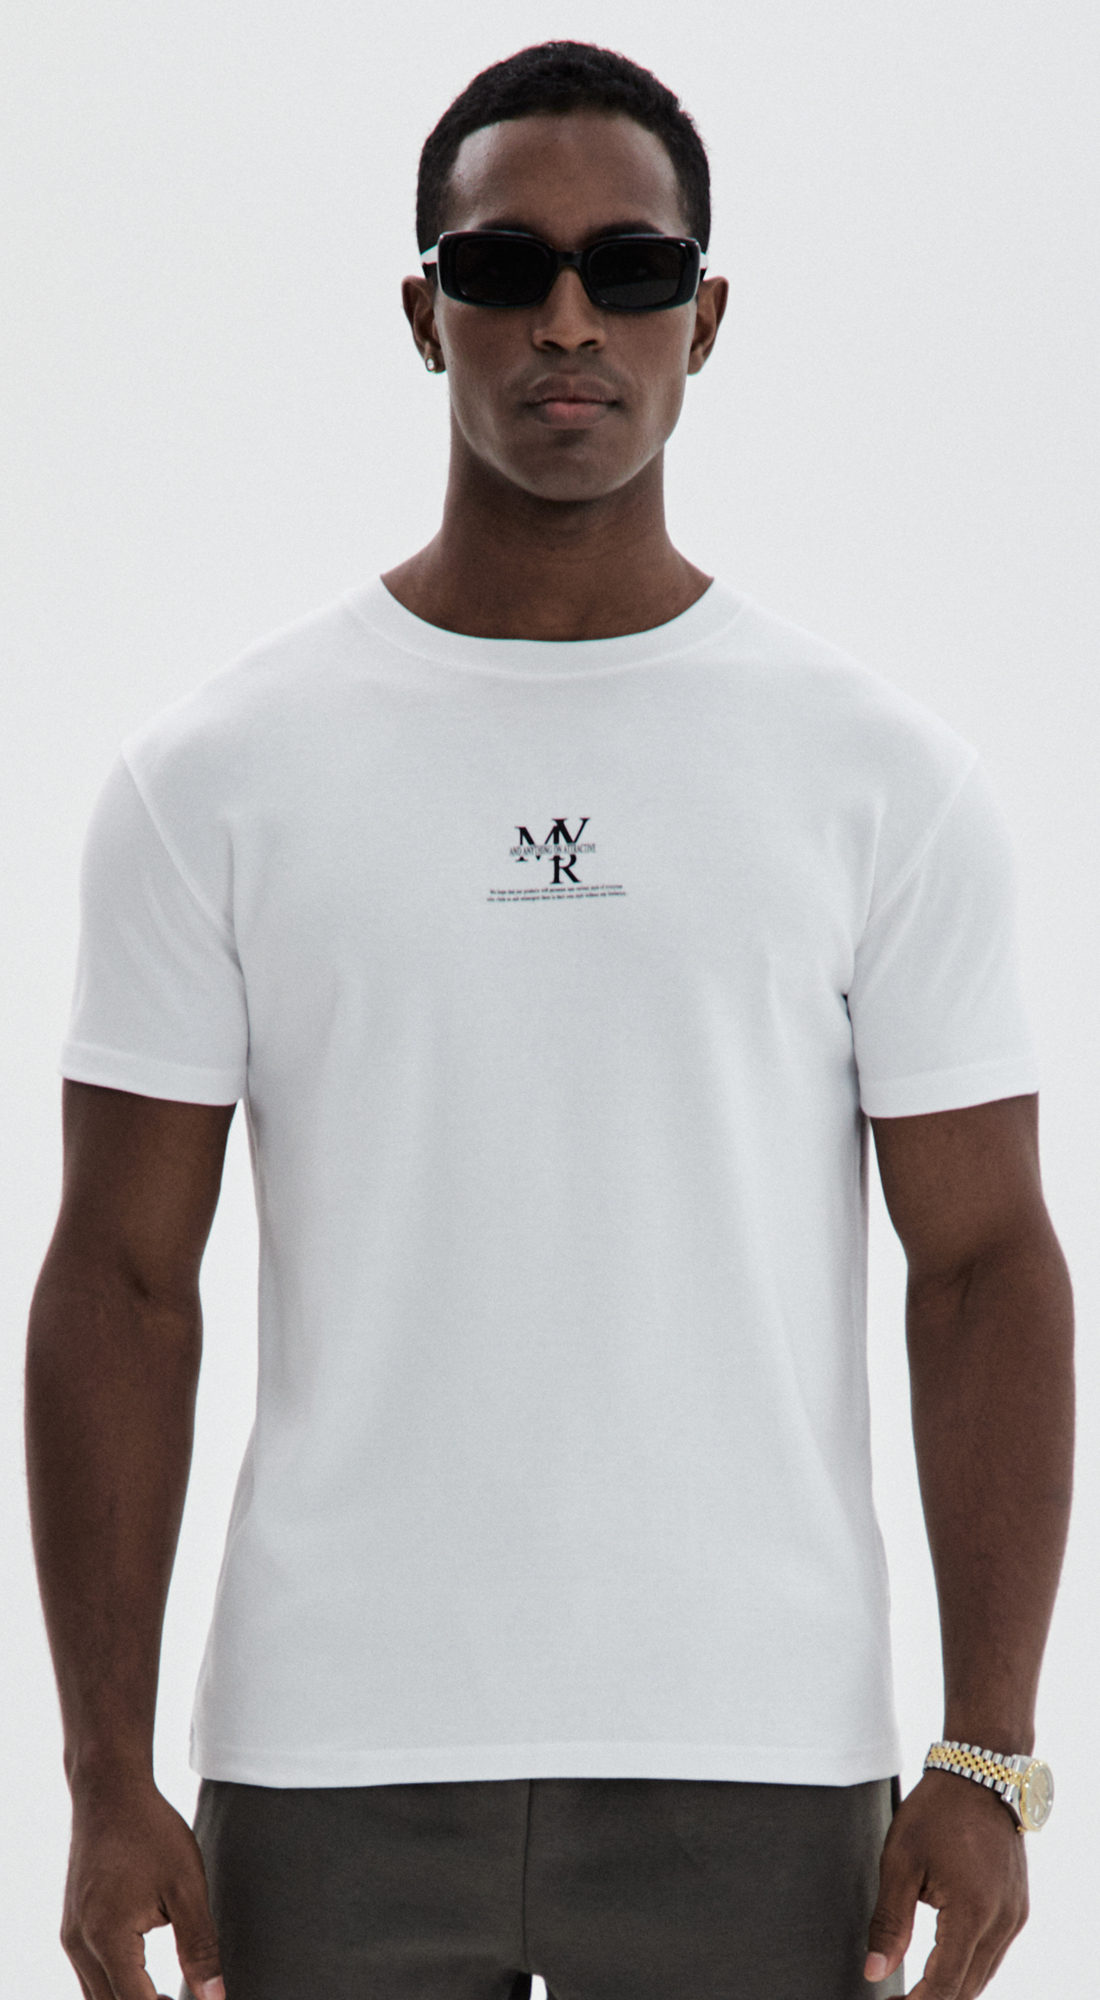 MVR 타이포 로고 슬림와이드 머슬핏 티셔츠 화이트